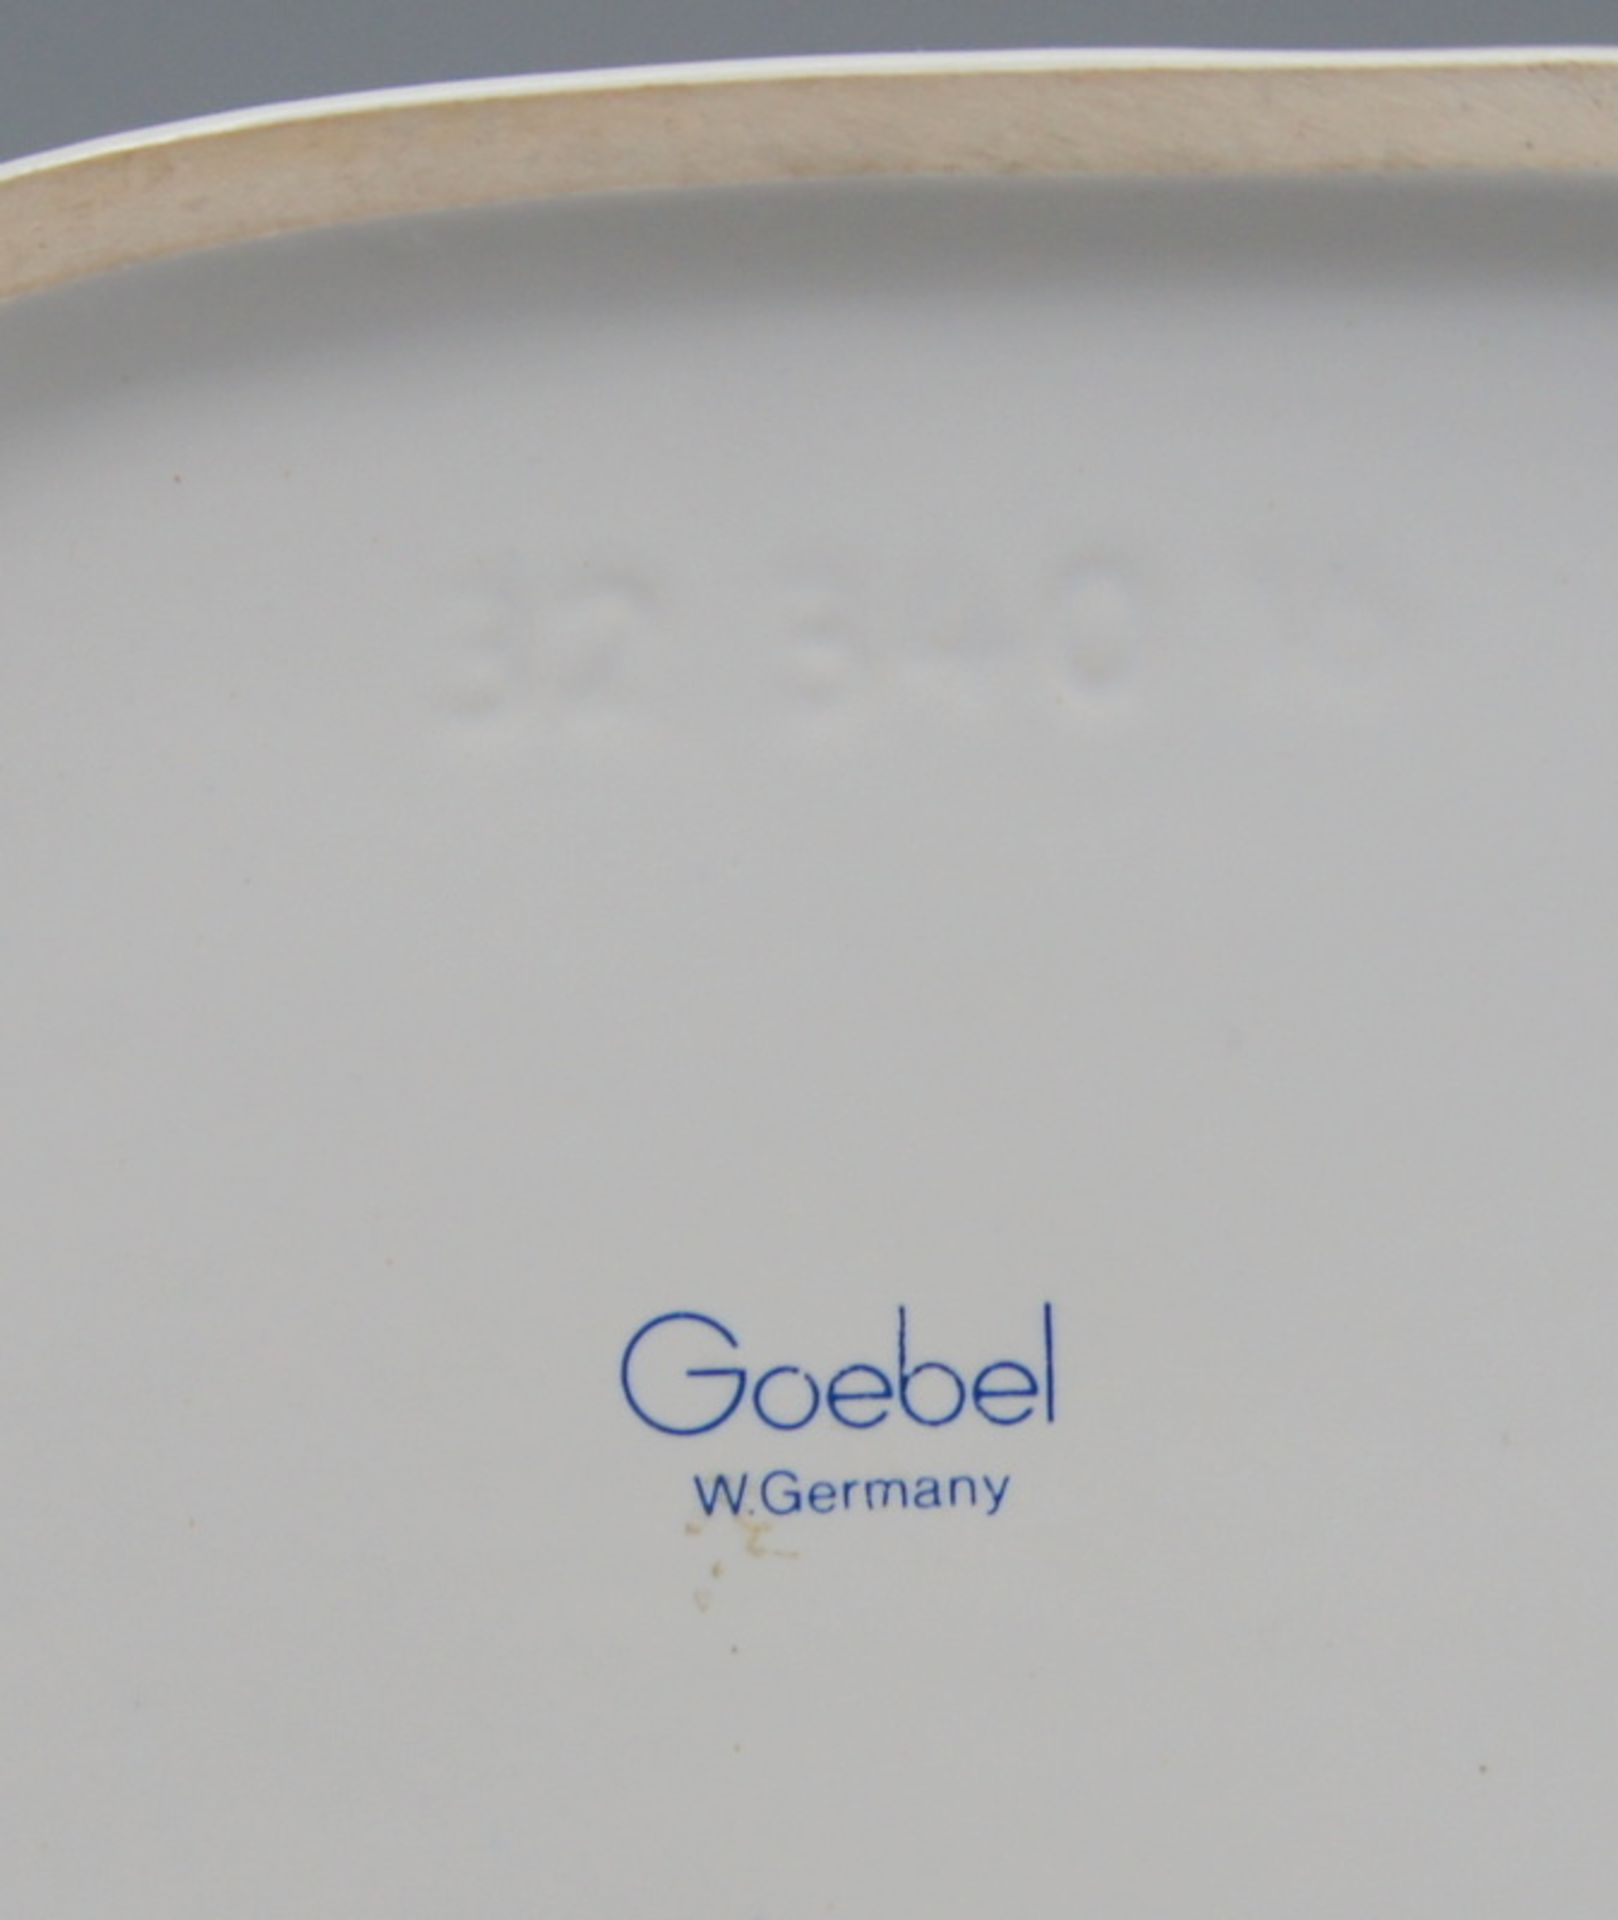 Goebel, Trabendes KaltblutPorzellan, am Boden mit blauer "Goebel Germany" Marke. Weiß - Bild 3 aus 3